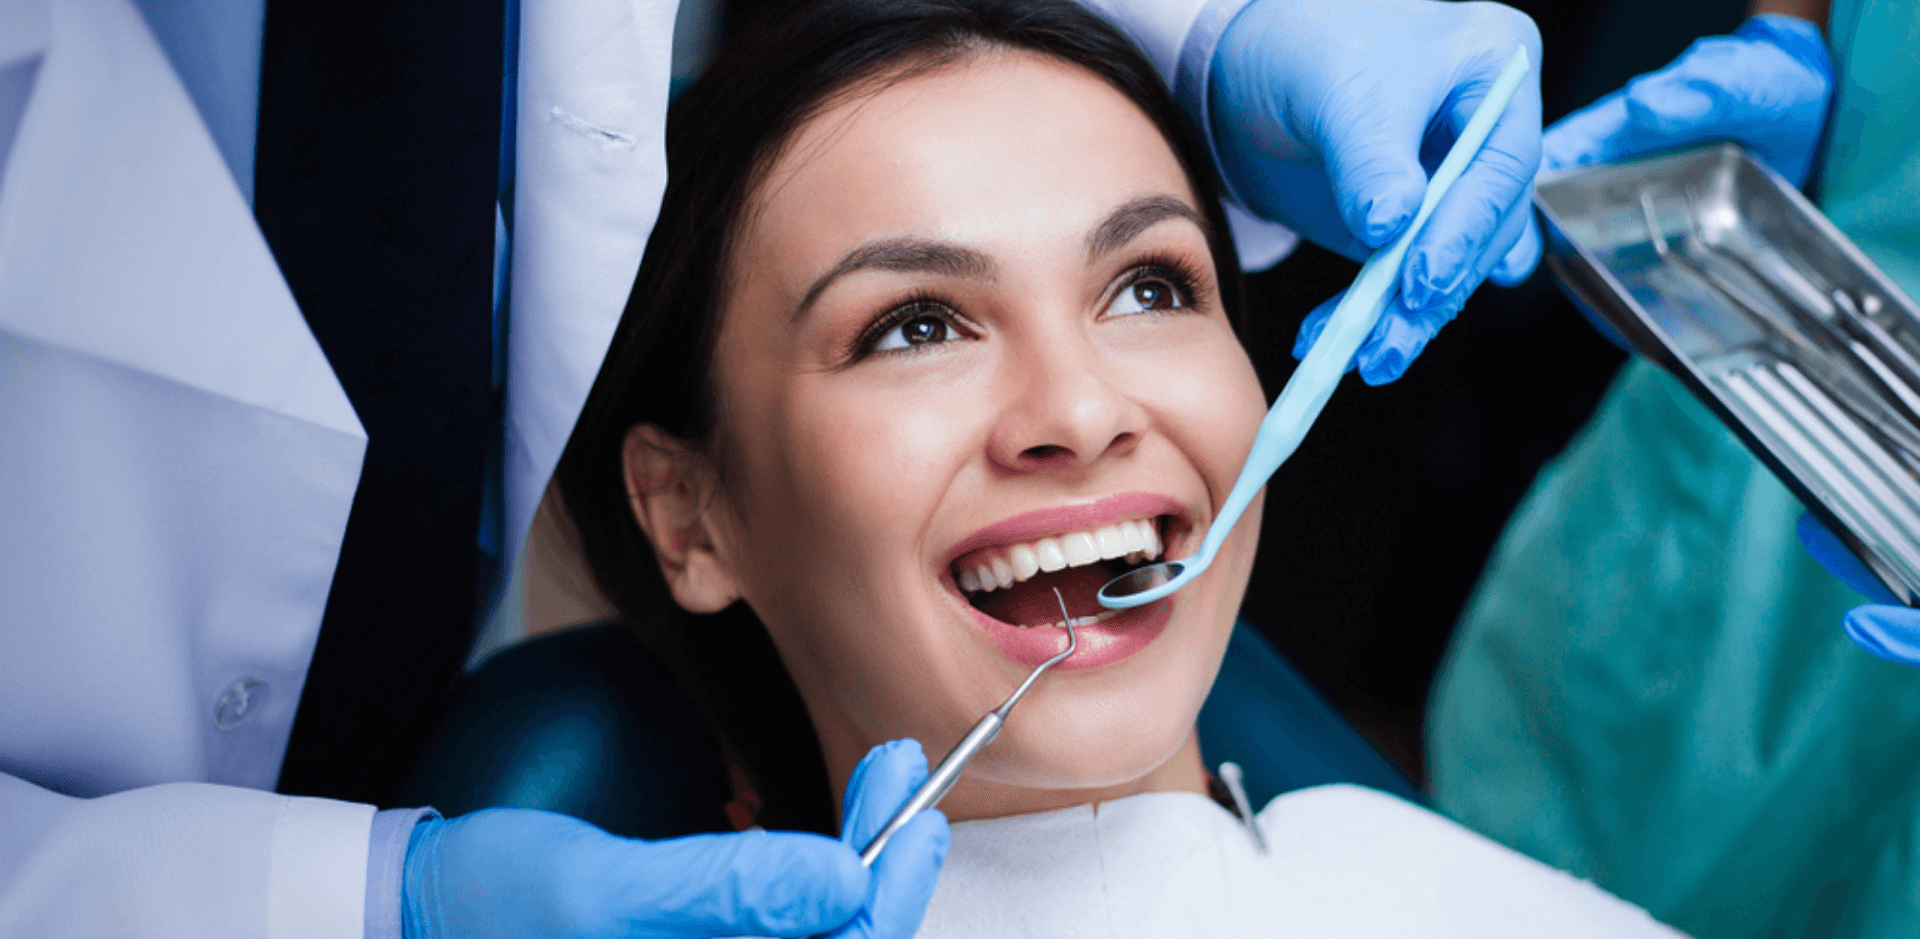 Стоматологическая патология. Профессиональная гигиена полости рта. Услуги стоматолога. Стоматология услуги. Терапевтическая стоматология.